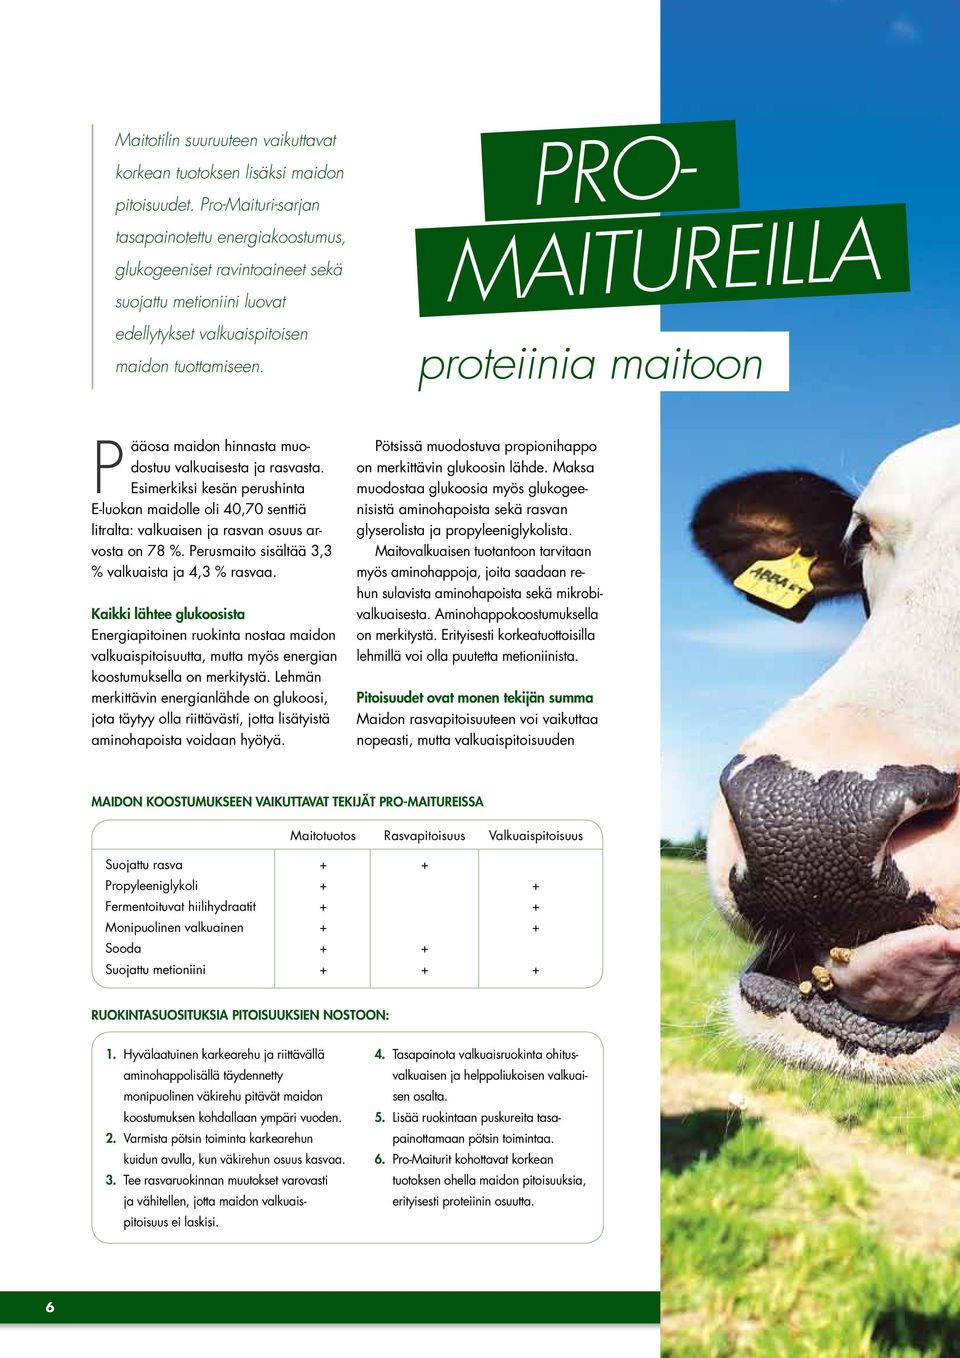 PRO- MAITUREILLA proteiinia maitoon Pääosa maidon hinnasta muodostuu valkuaisesta ja rasvasta.